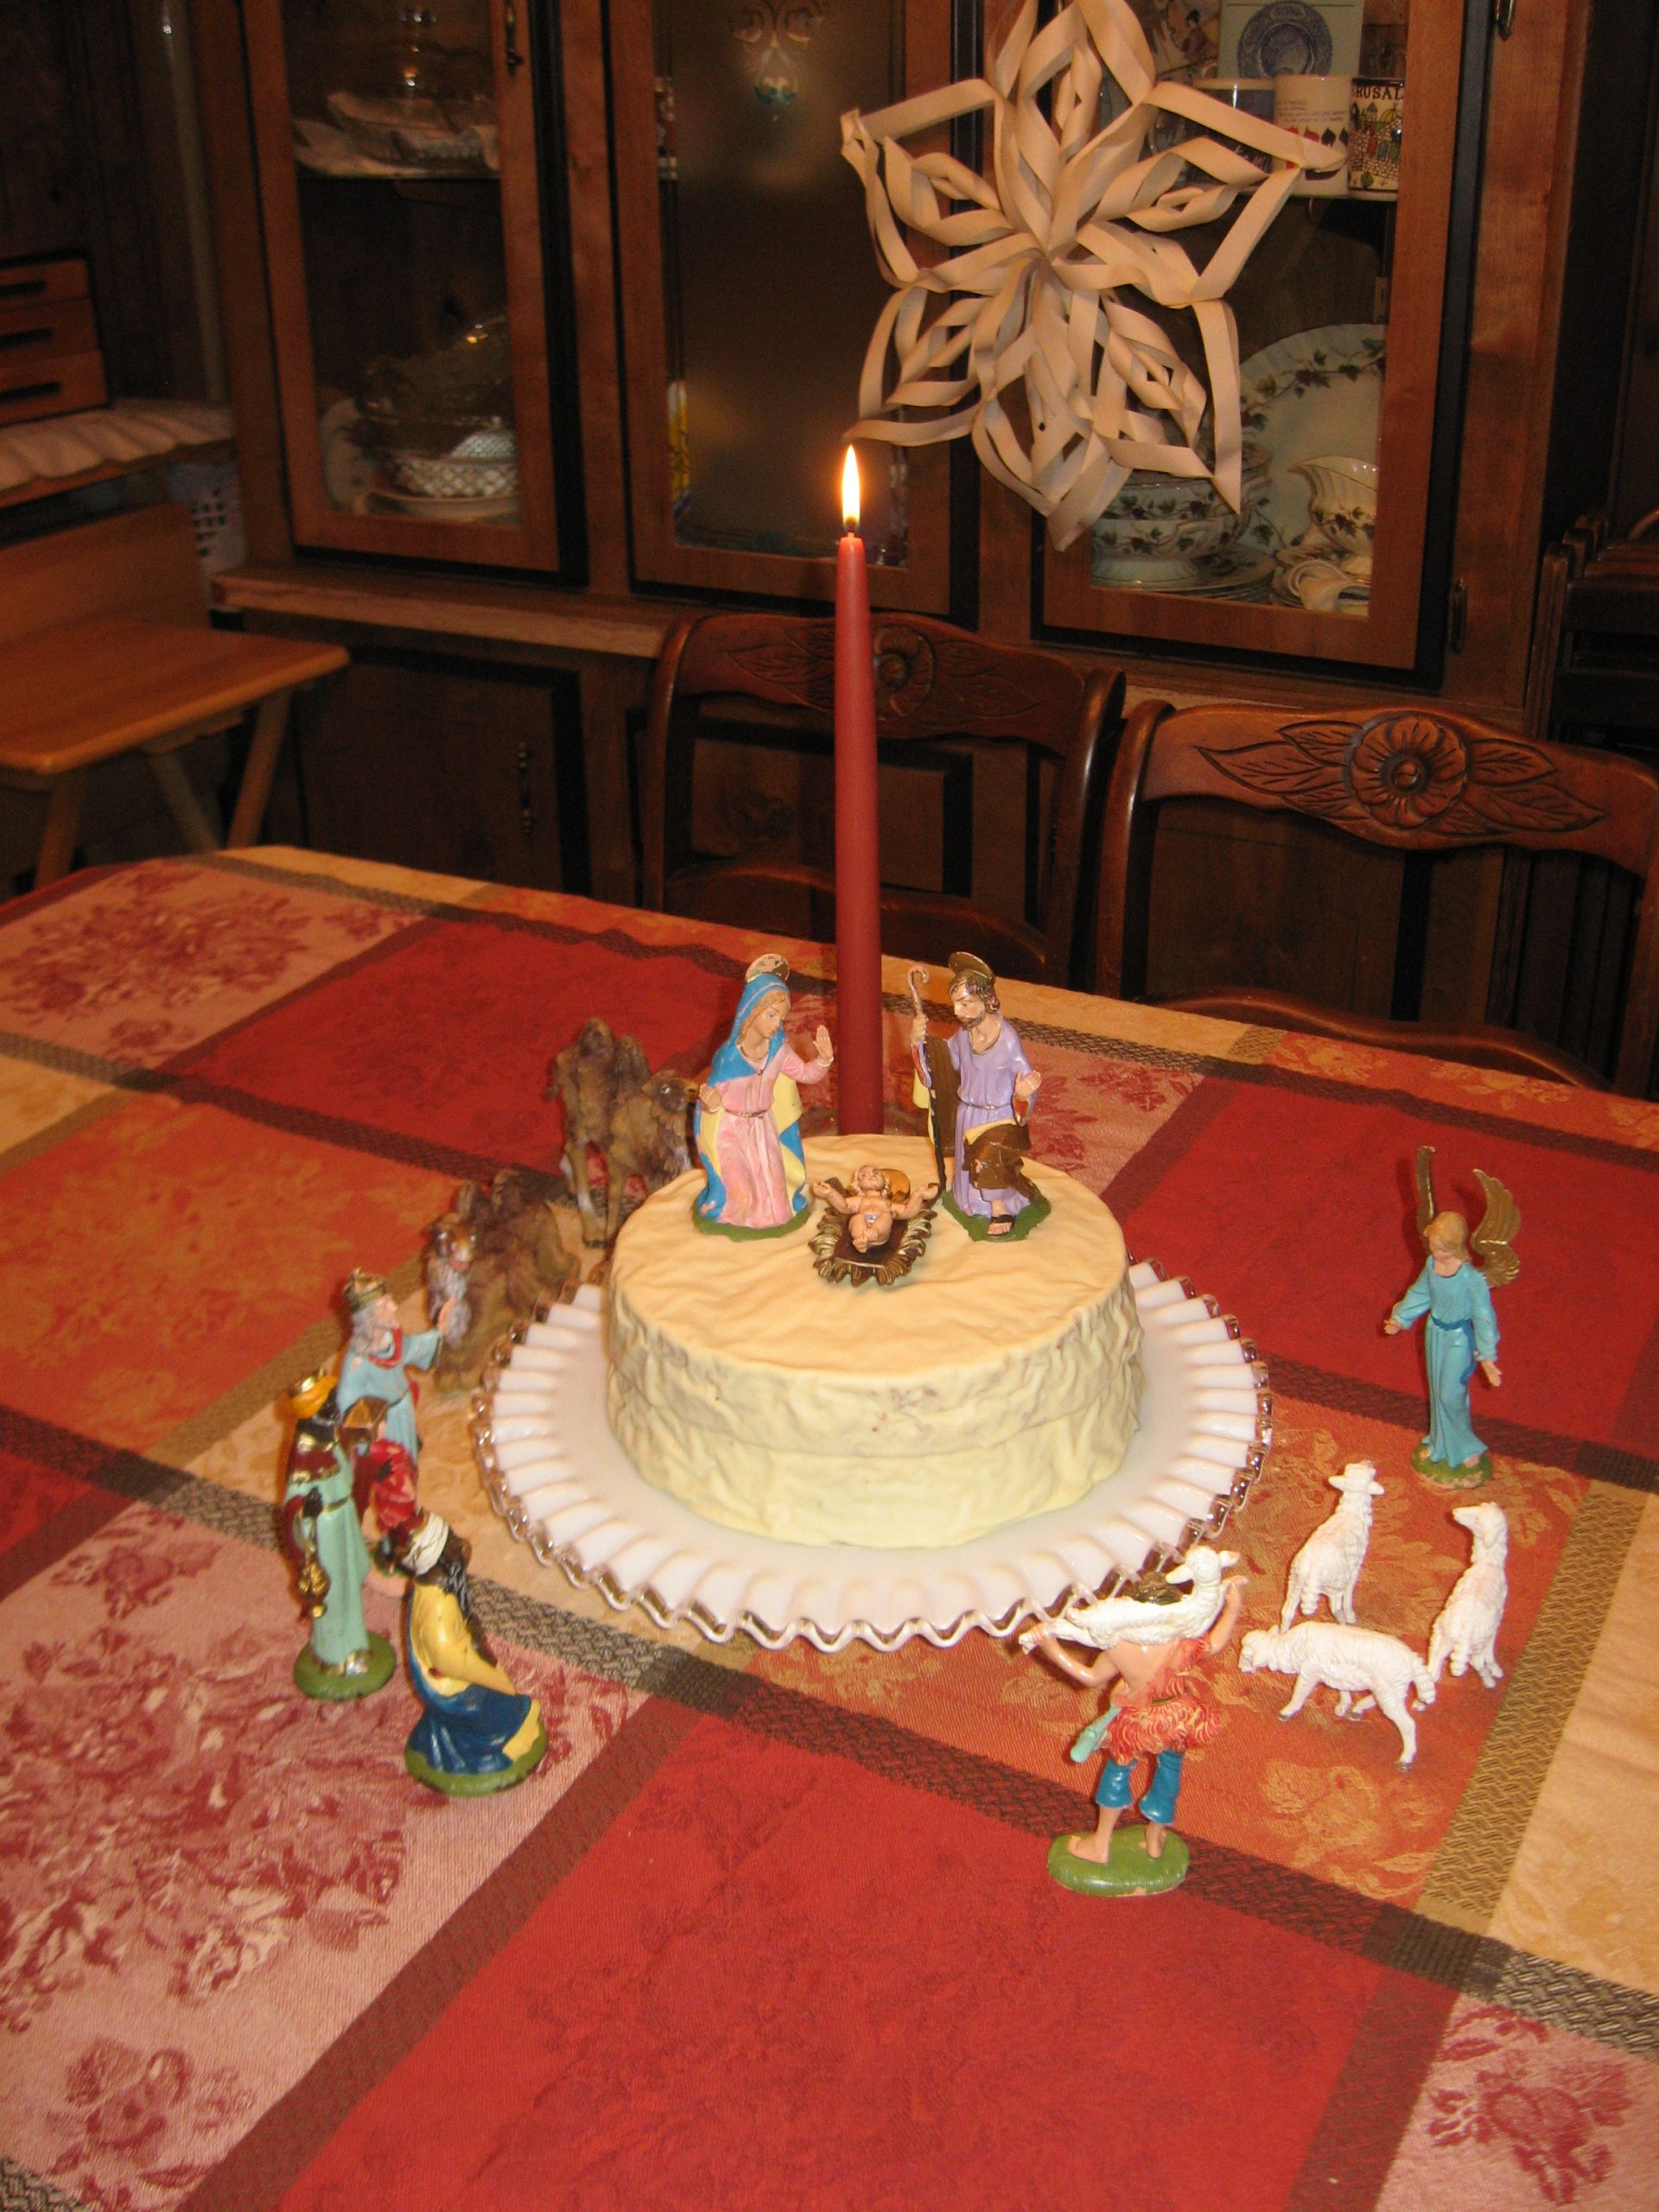 Jesus Birthday Cake
 Home for the Holidays – Baby Jesus Birthday Cake